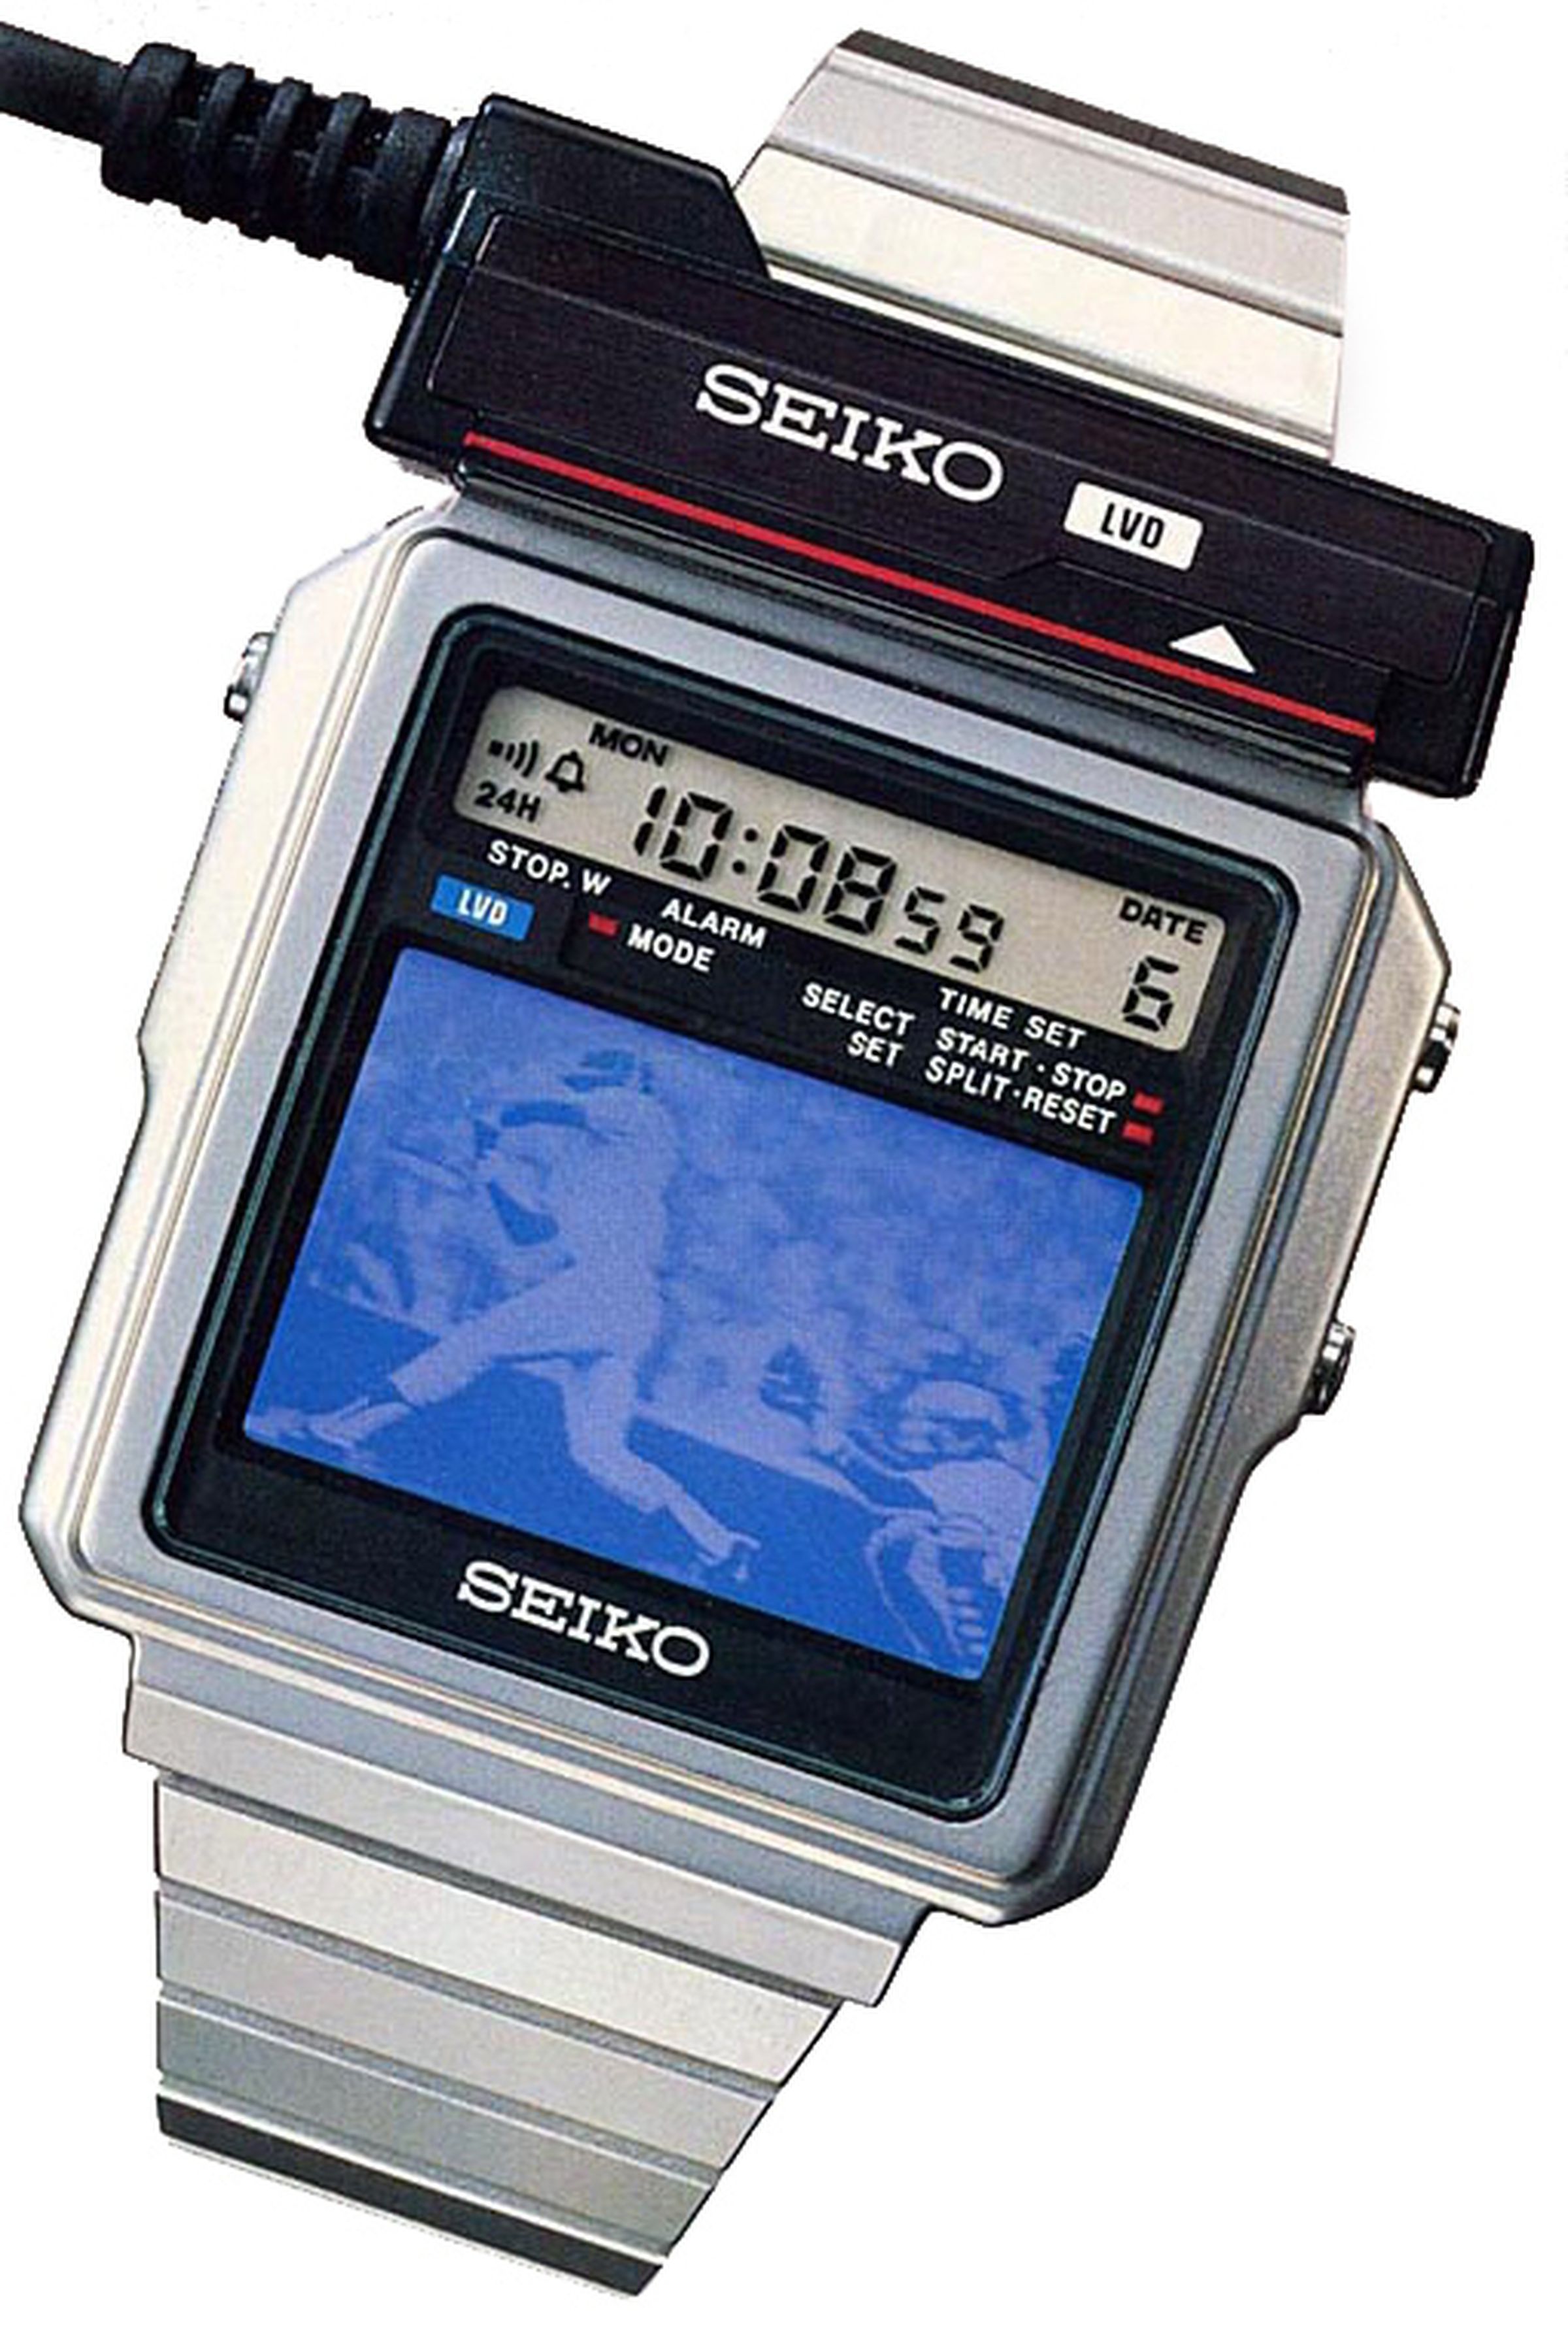 The Seiko T001.